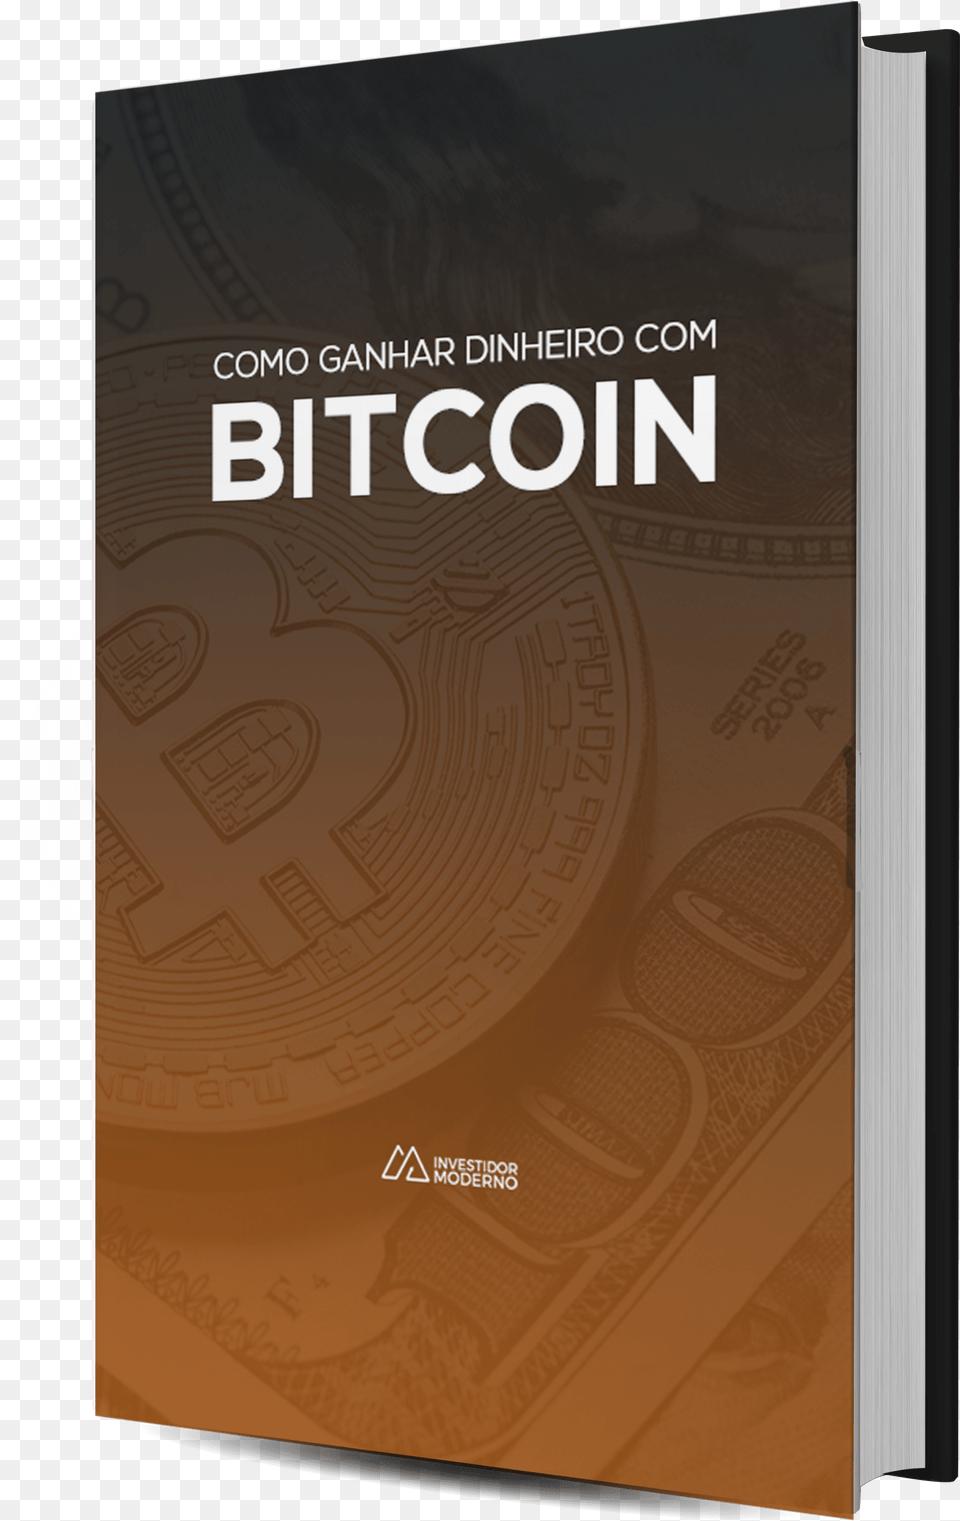 Como Ganhar Dinheiro Com Bitcoin Poster, Book, Publication, Novel Free Png